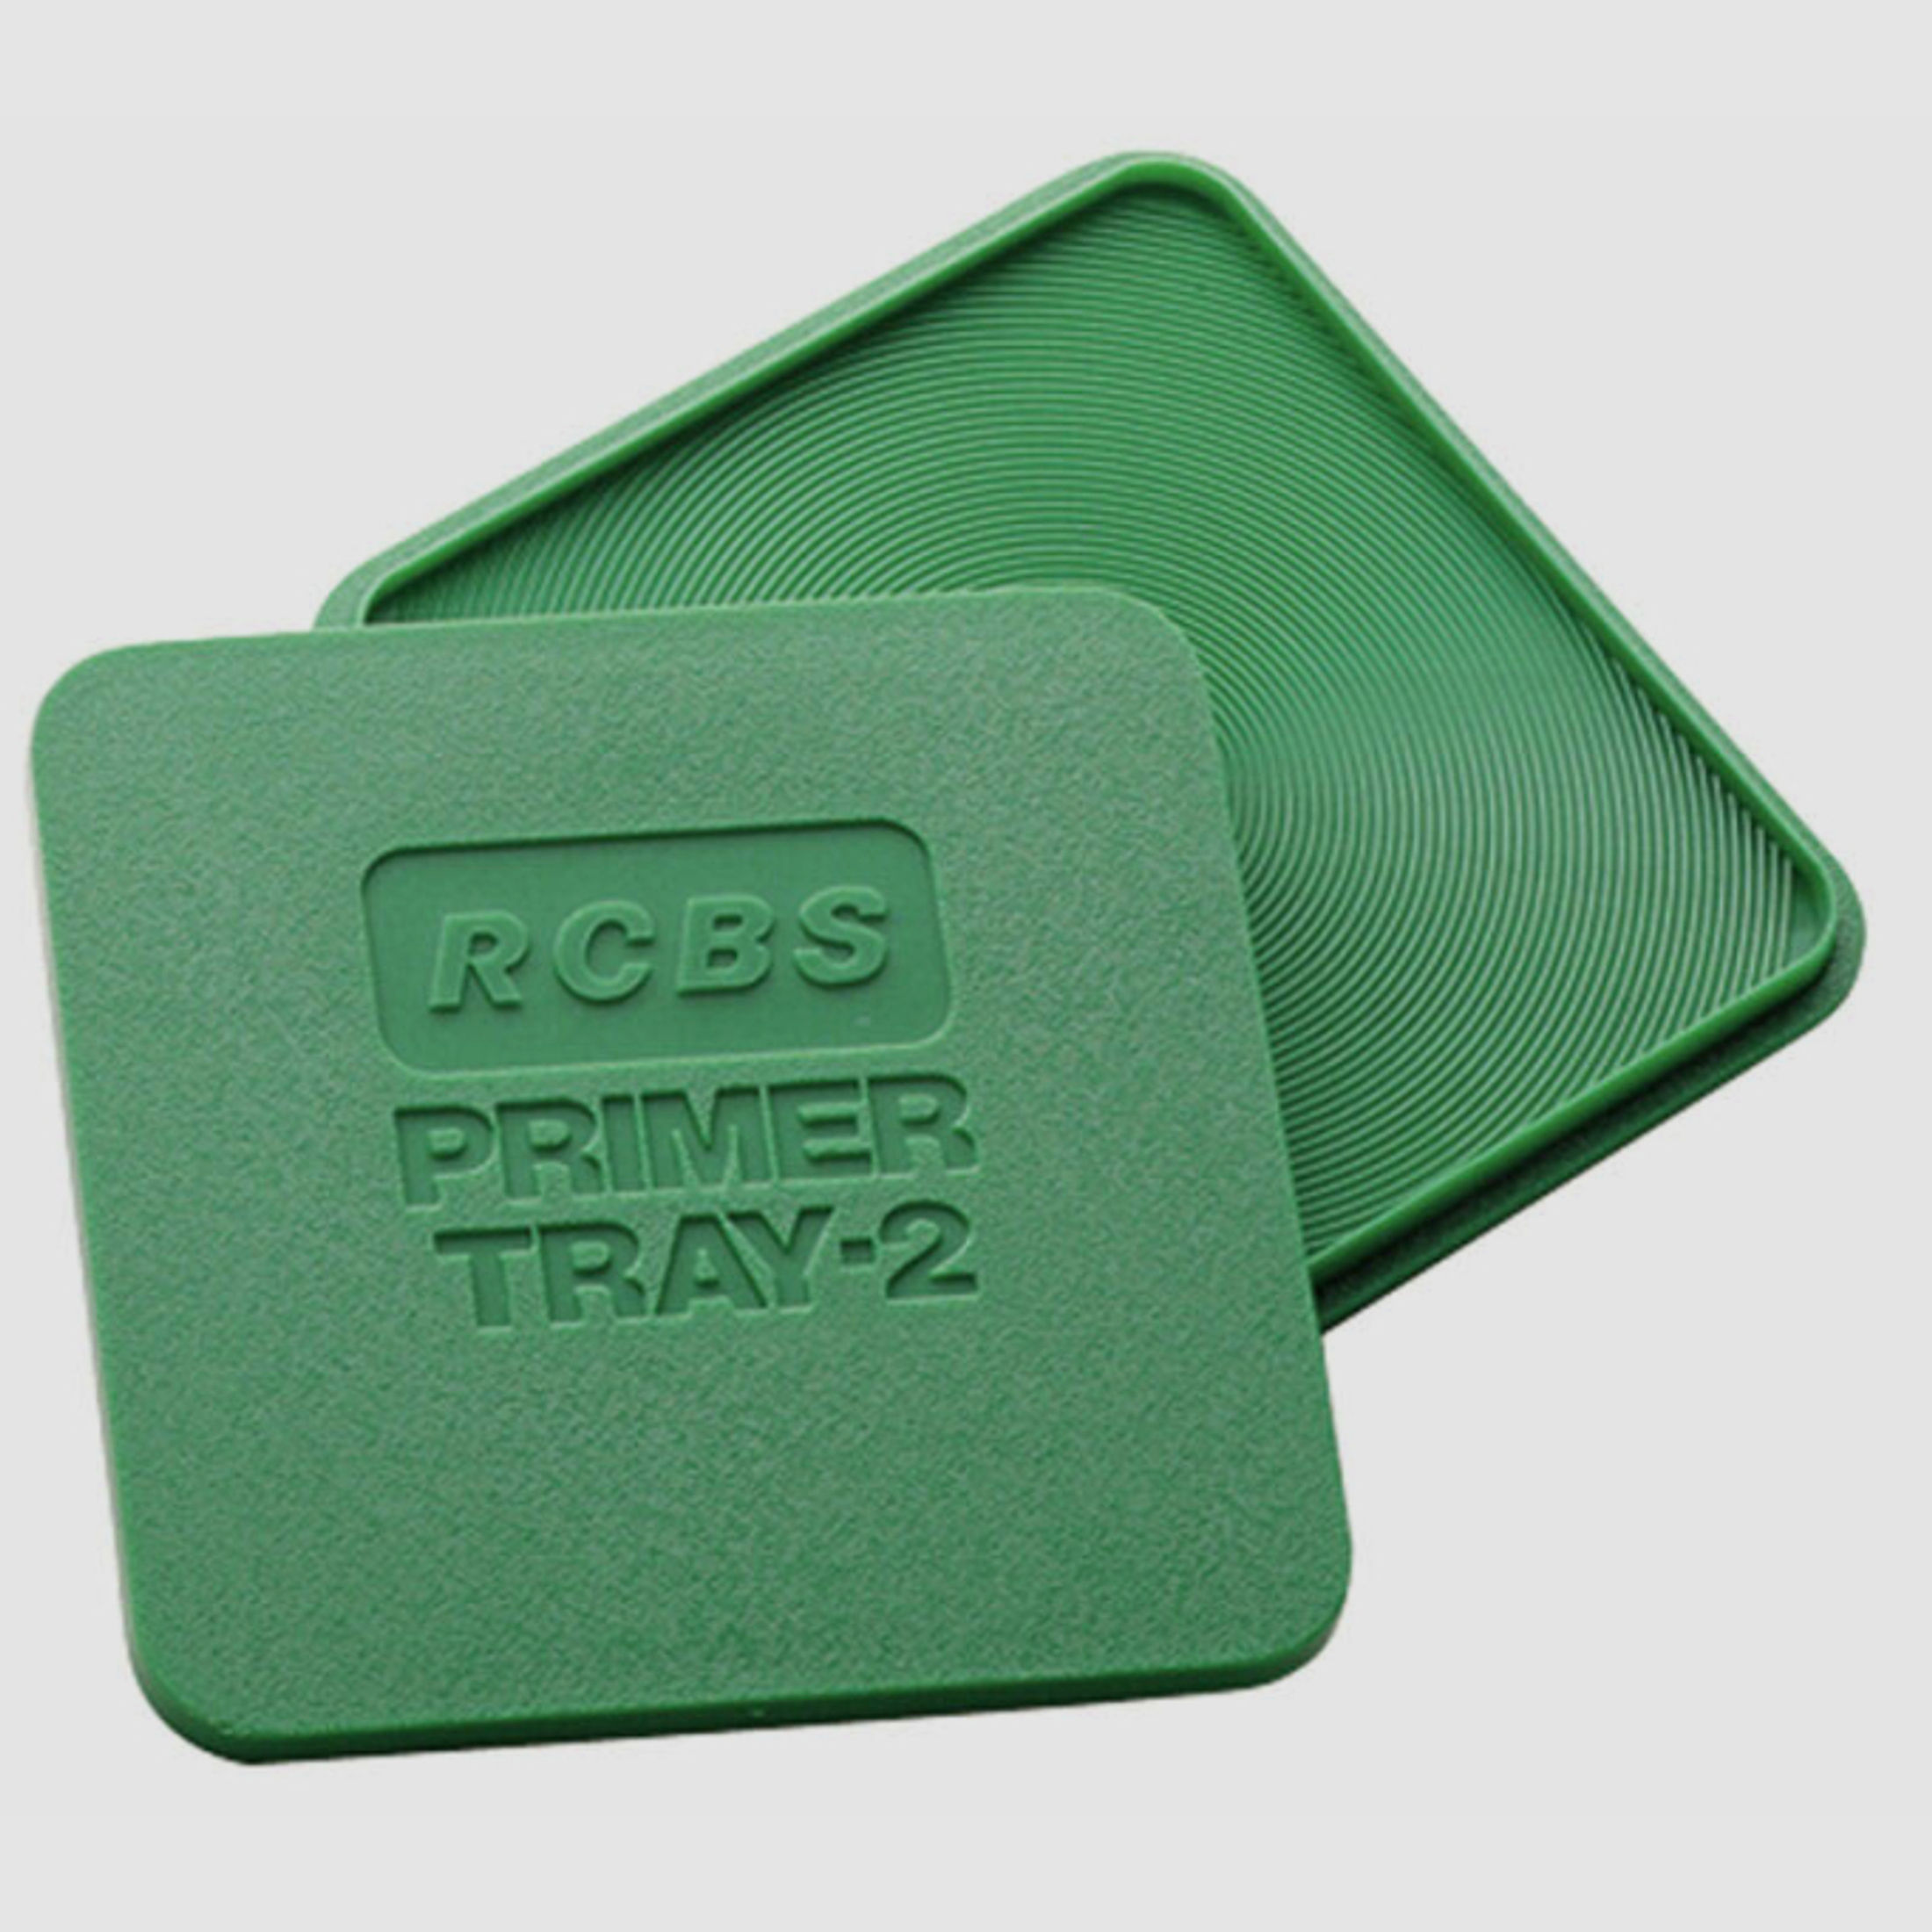 RCBS 9480 PRIMER TRAY-2 Zündhütchenwendebox | quadratisch mit gerillter Oberlfäche zum Wenden von Zü